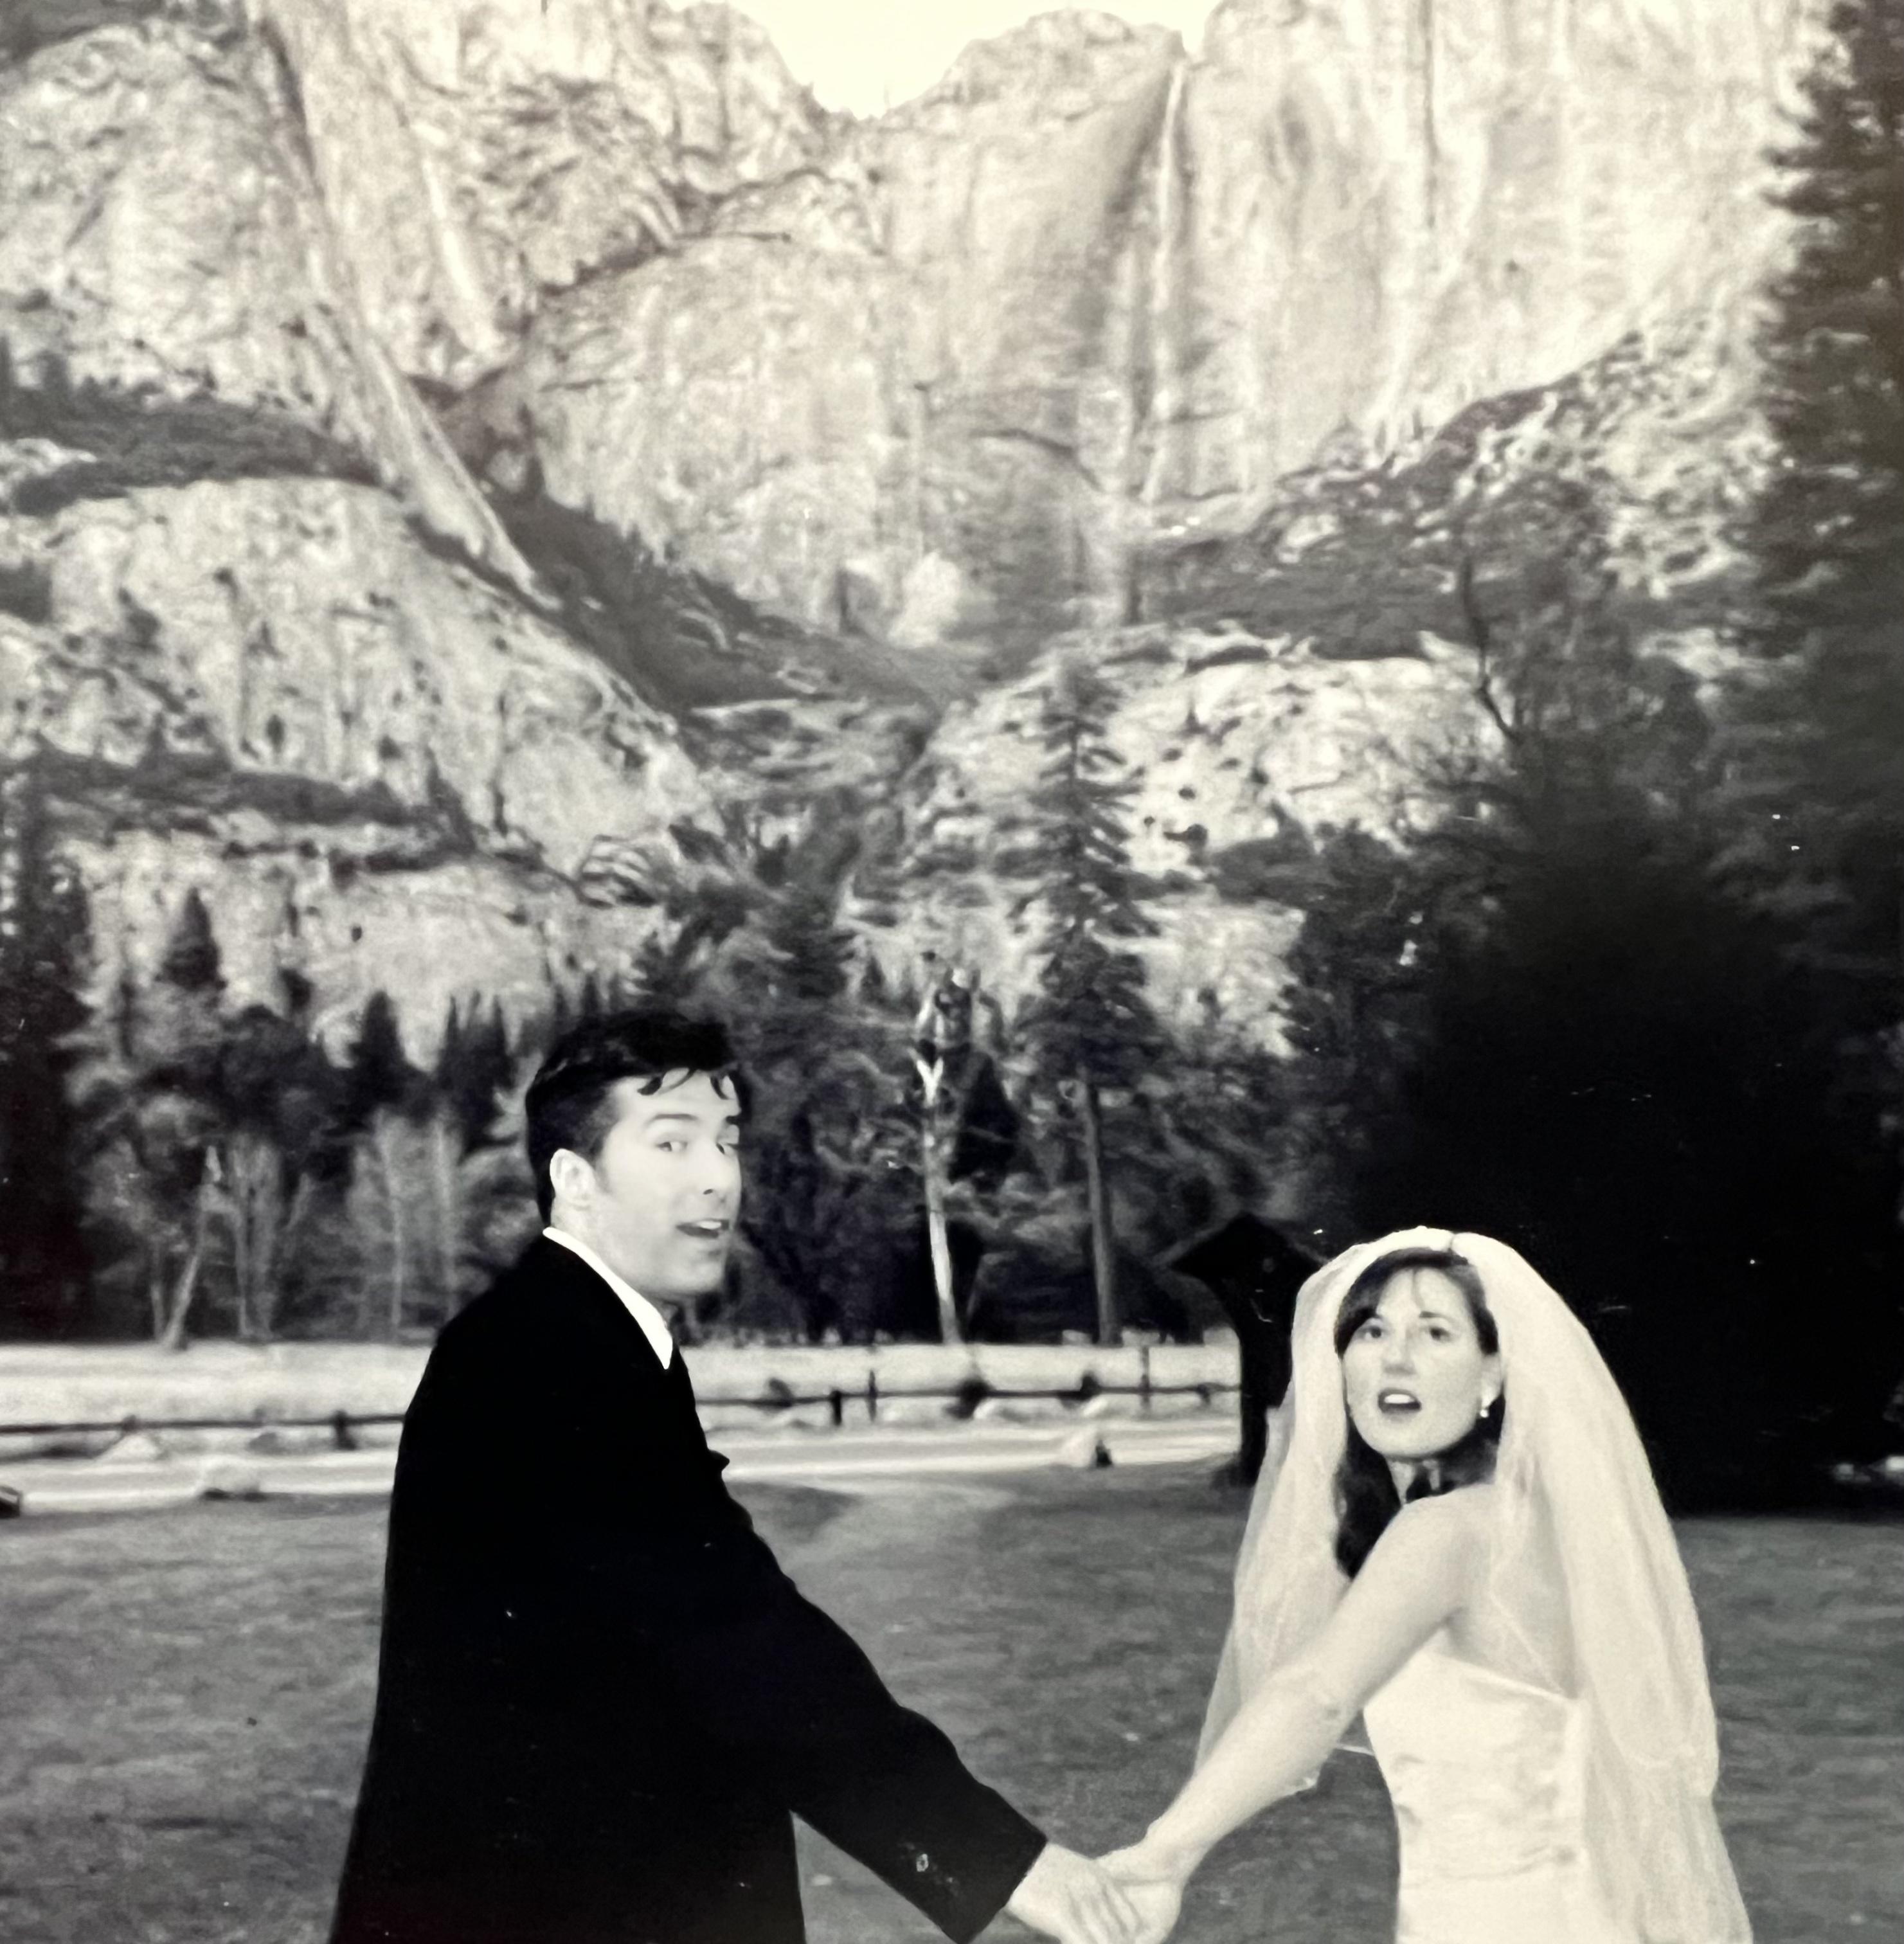 the author's wedding photo in Yosemite